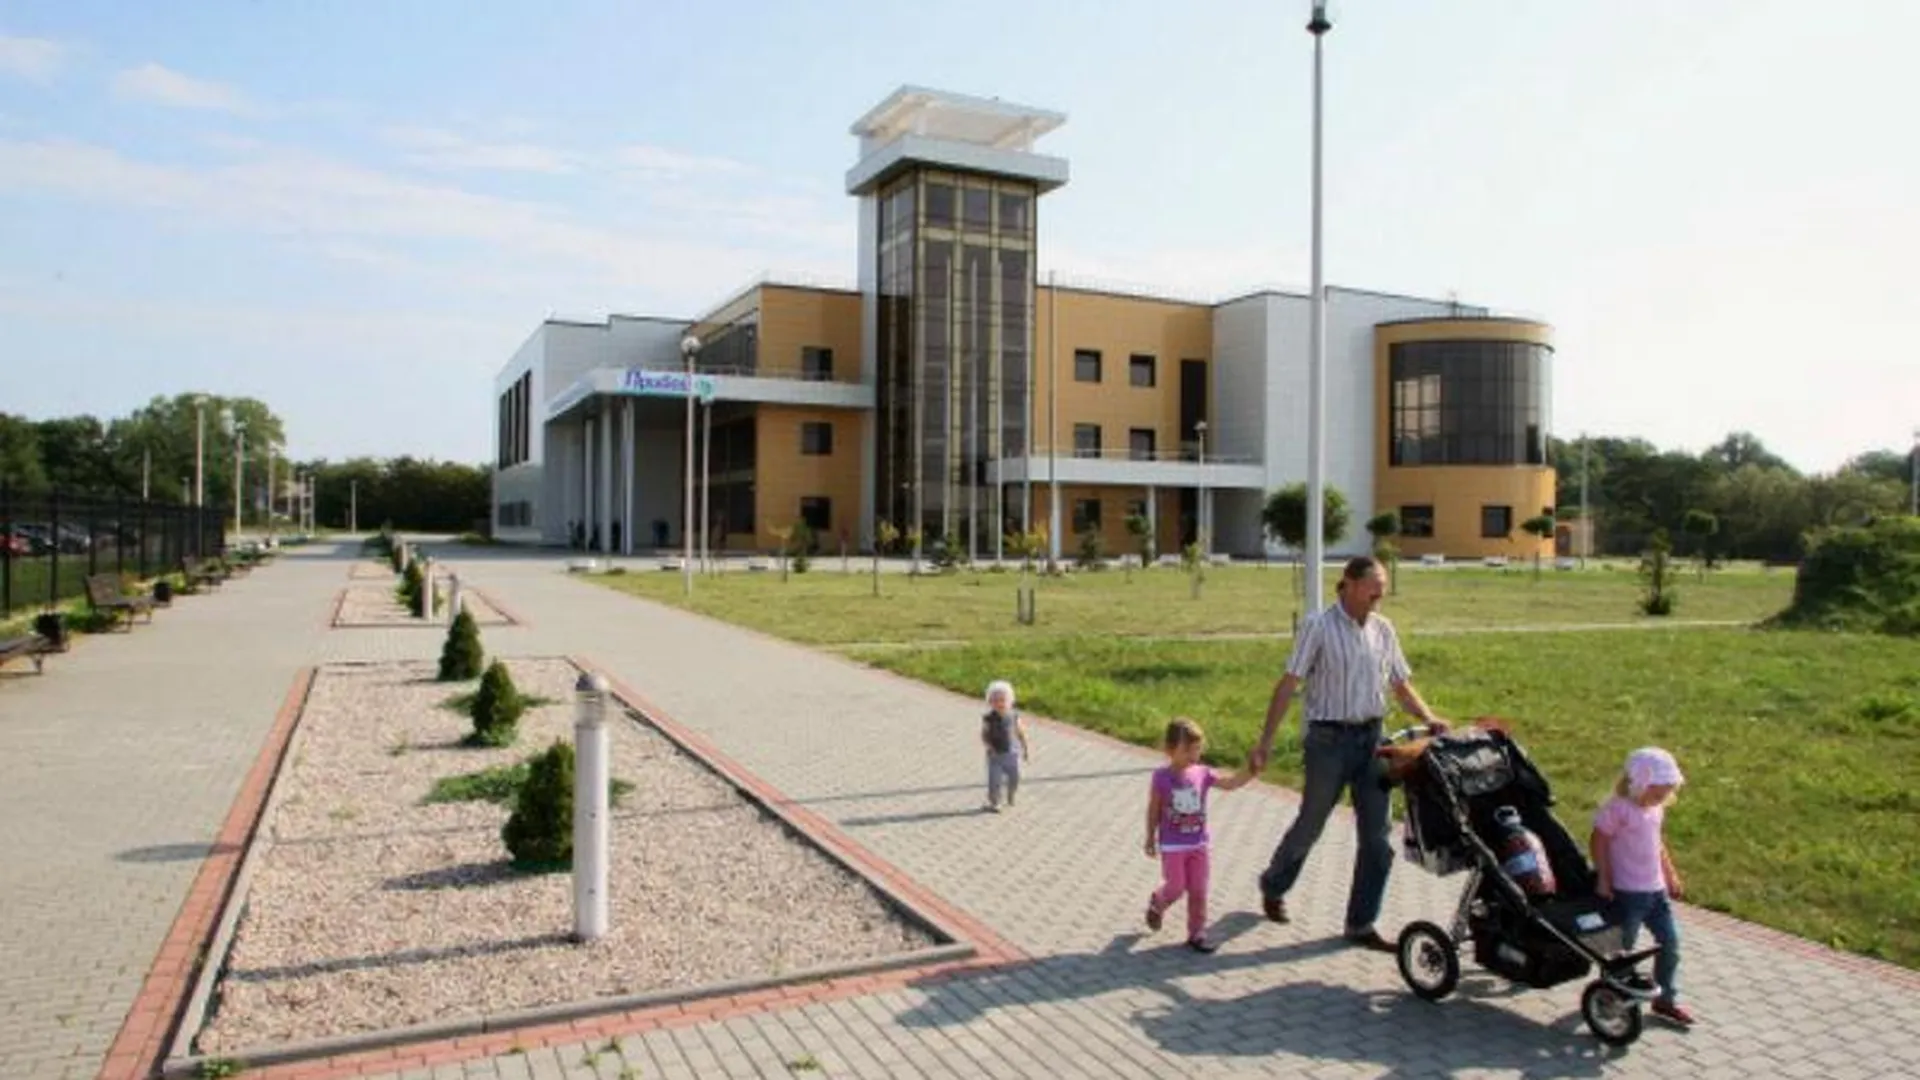 Универсальный культурно-досуговый комплекс для детей и взрослых построят в Подольске